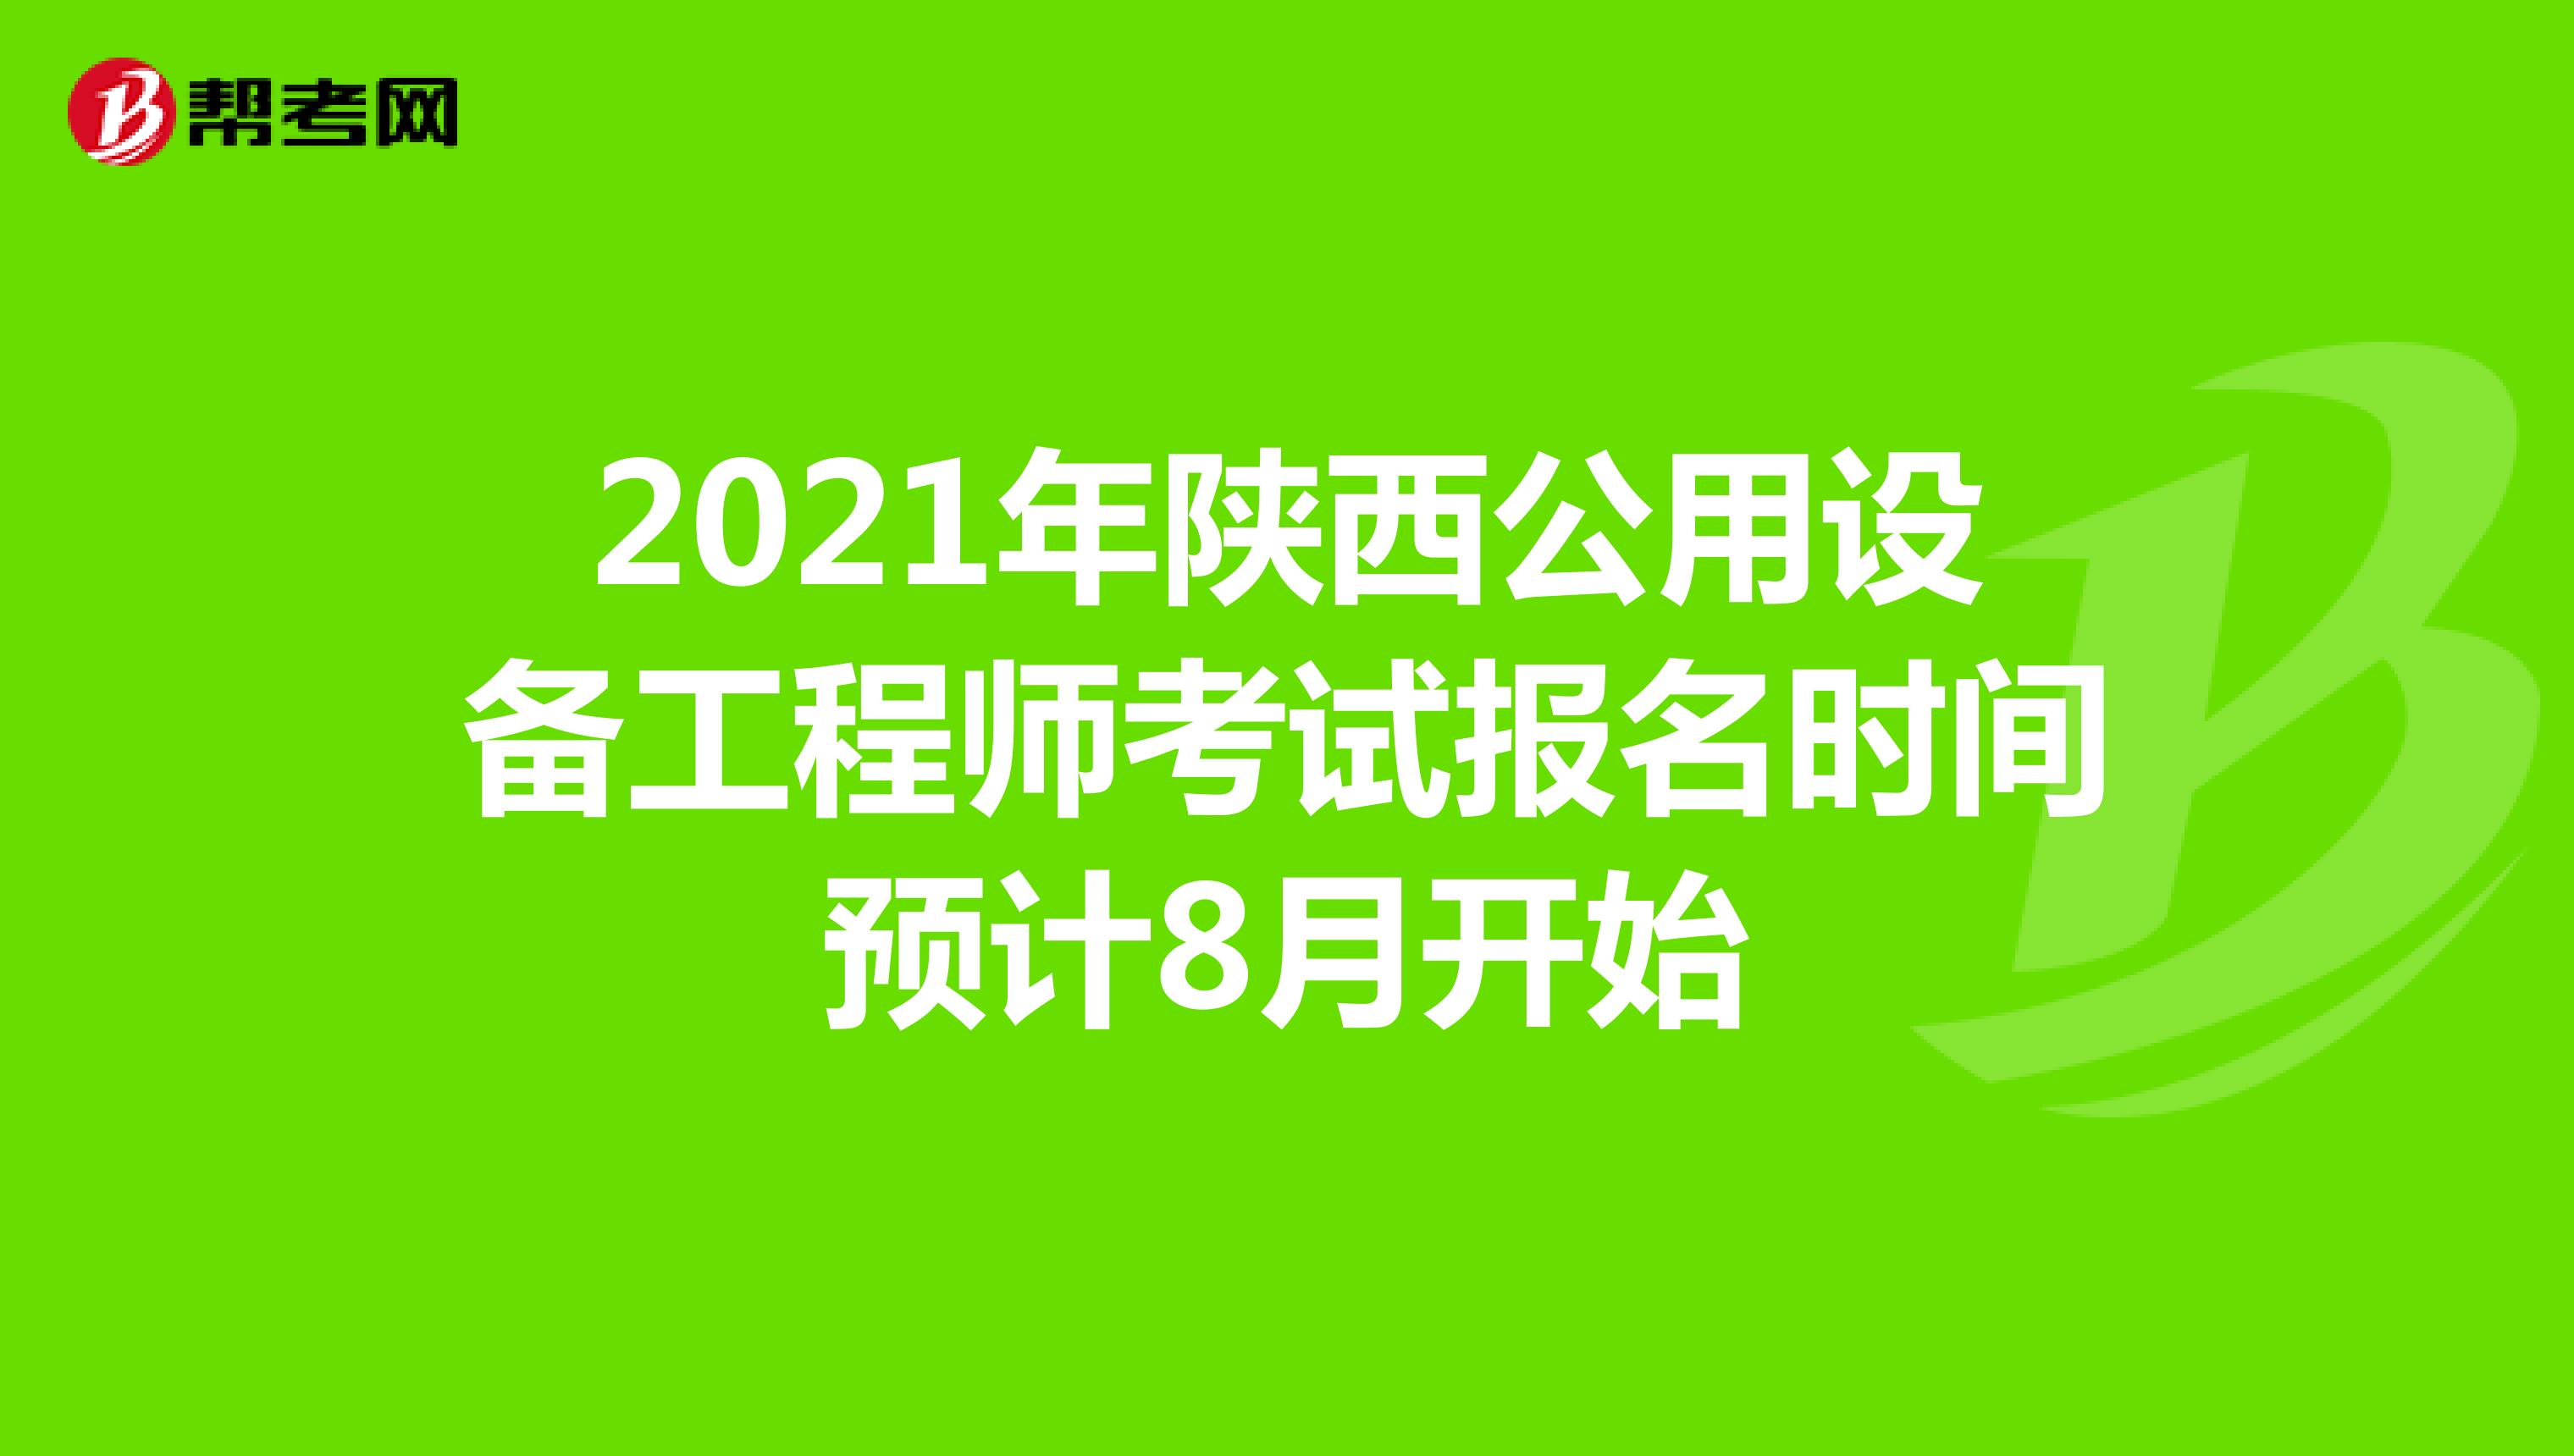 2021年陕西公用设备工程师考试报名时间预计8月开始